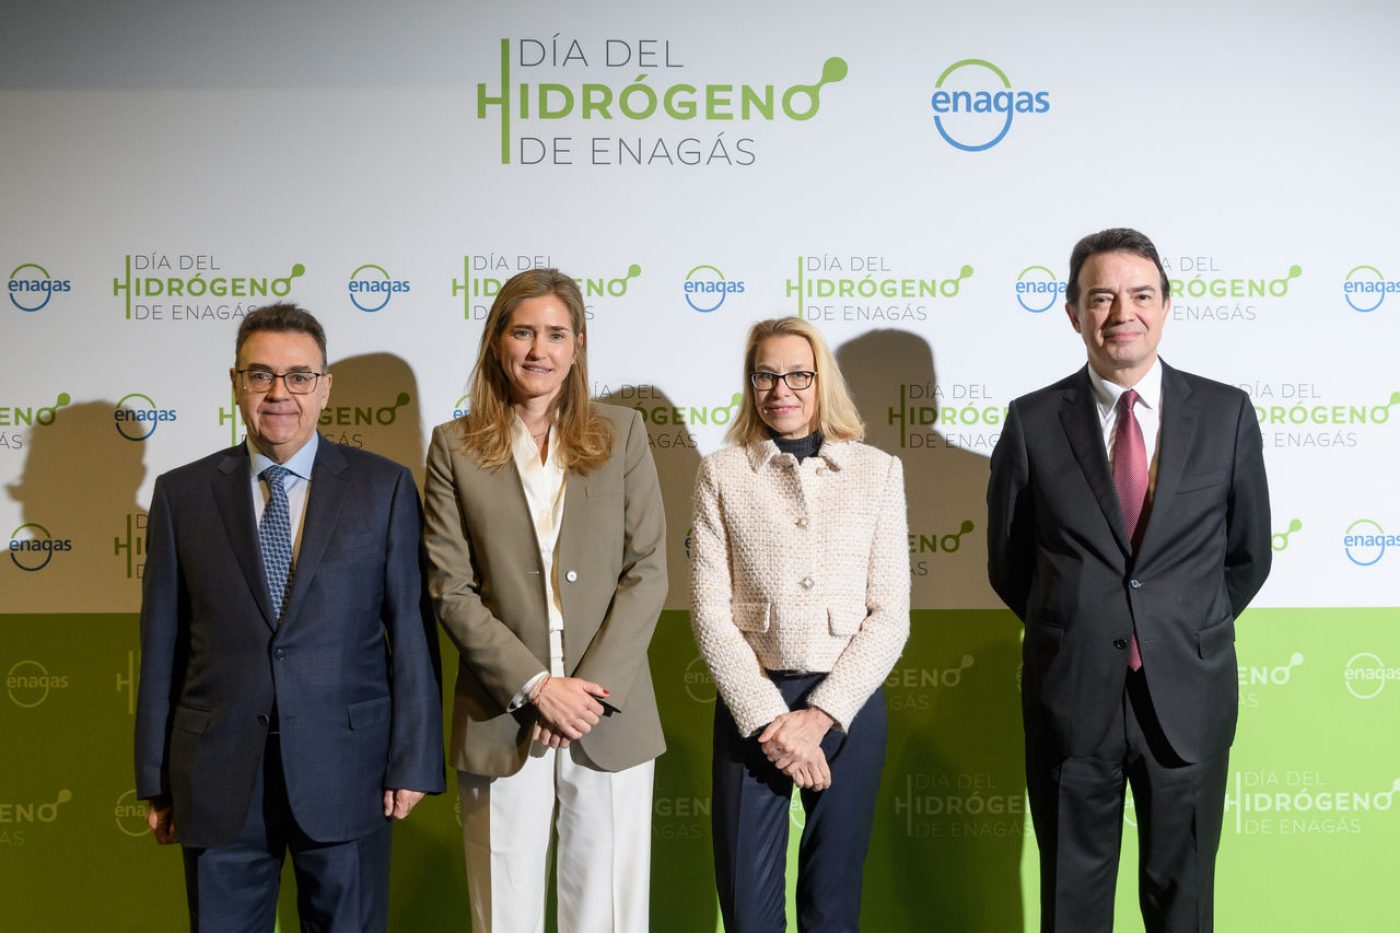 El Presidente y el CEO de Enagás junto a personalidades institucionales en la primera edición del Día del Hidrógeno de Enagás 